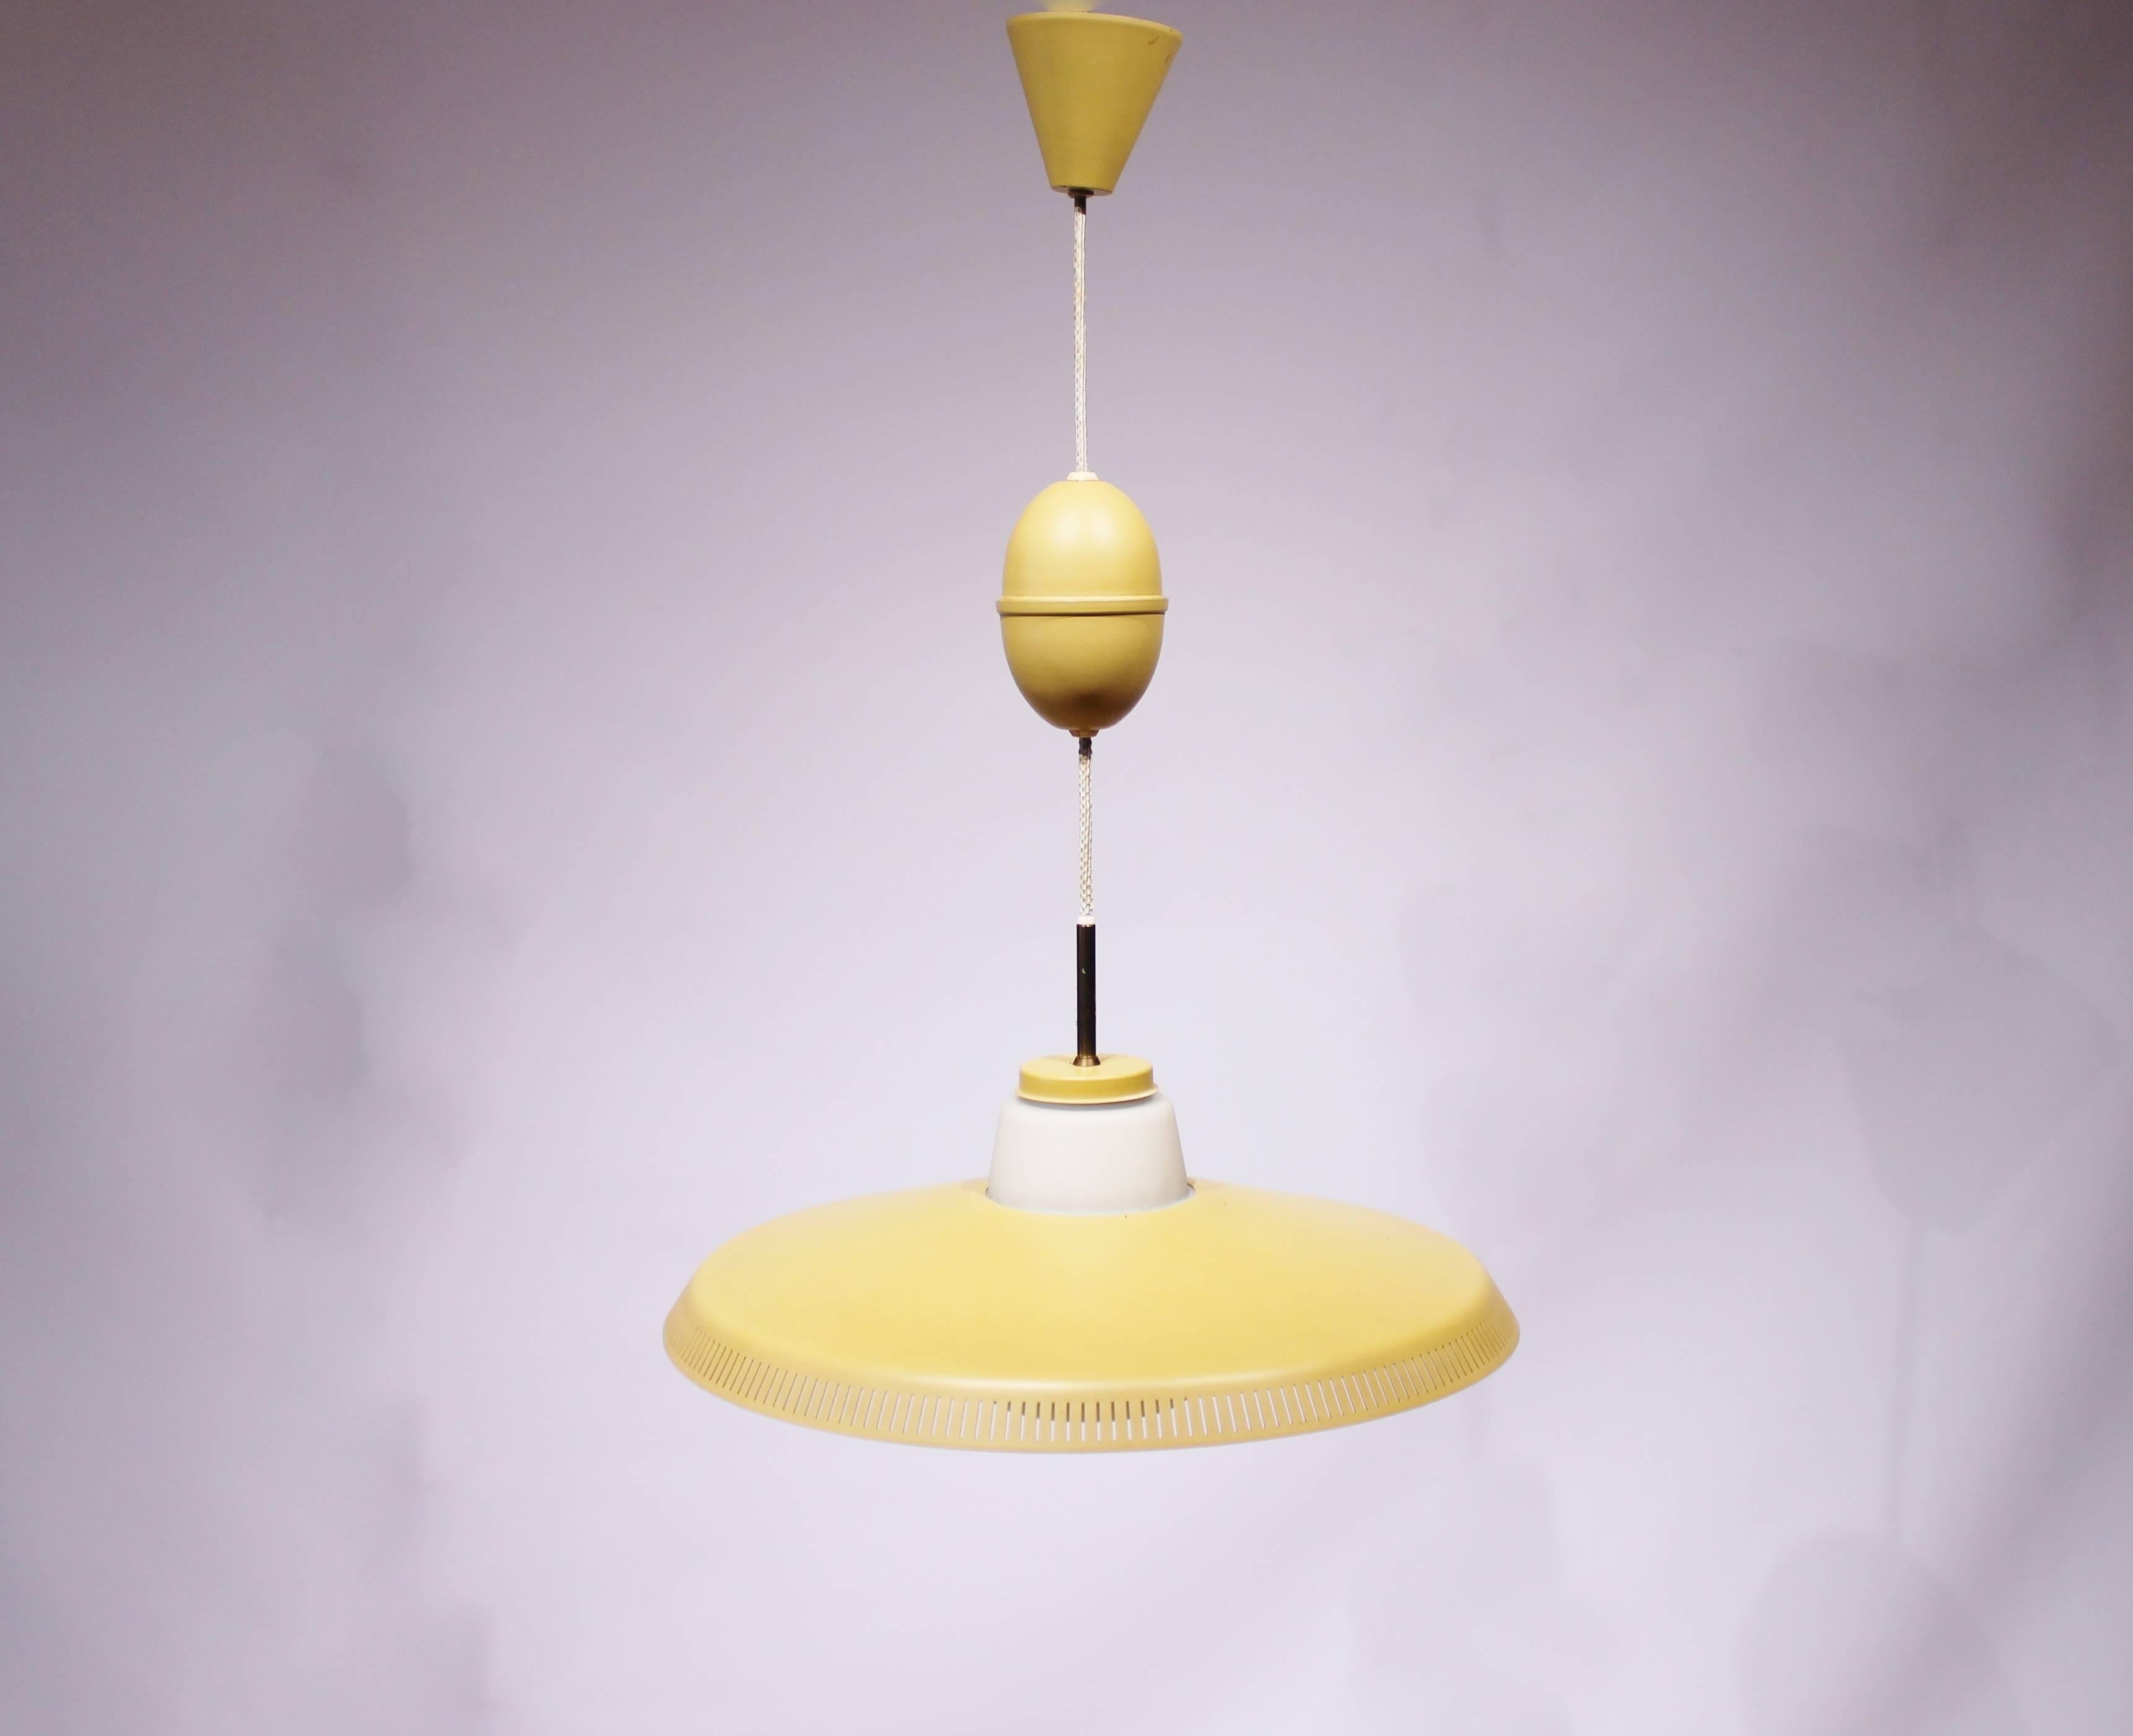 Gelbe Pendelleuchte, Modell P415, entworfen von Bent Karlby und hergestellt von Lyfa in den 1960er Jahren. Die Lampe ist in einem tollen Vintage-Zustand aus den 1960er Jahren.